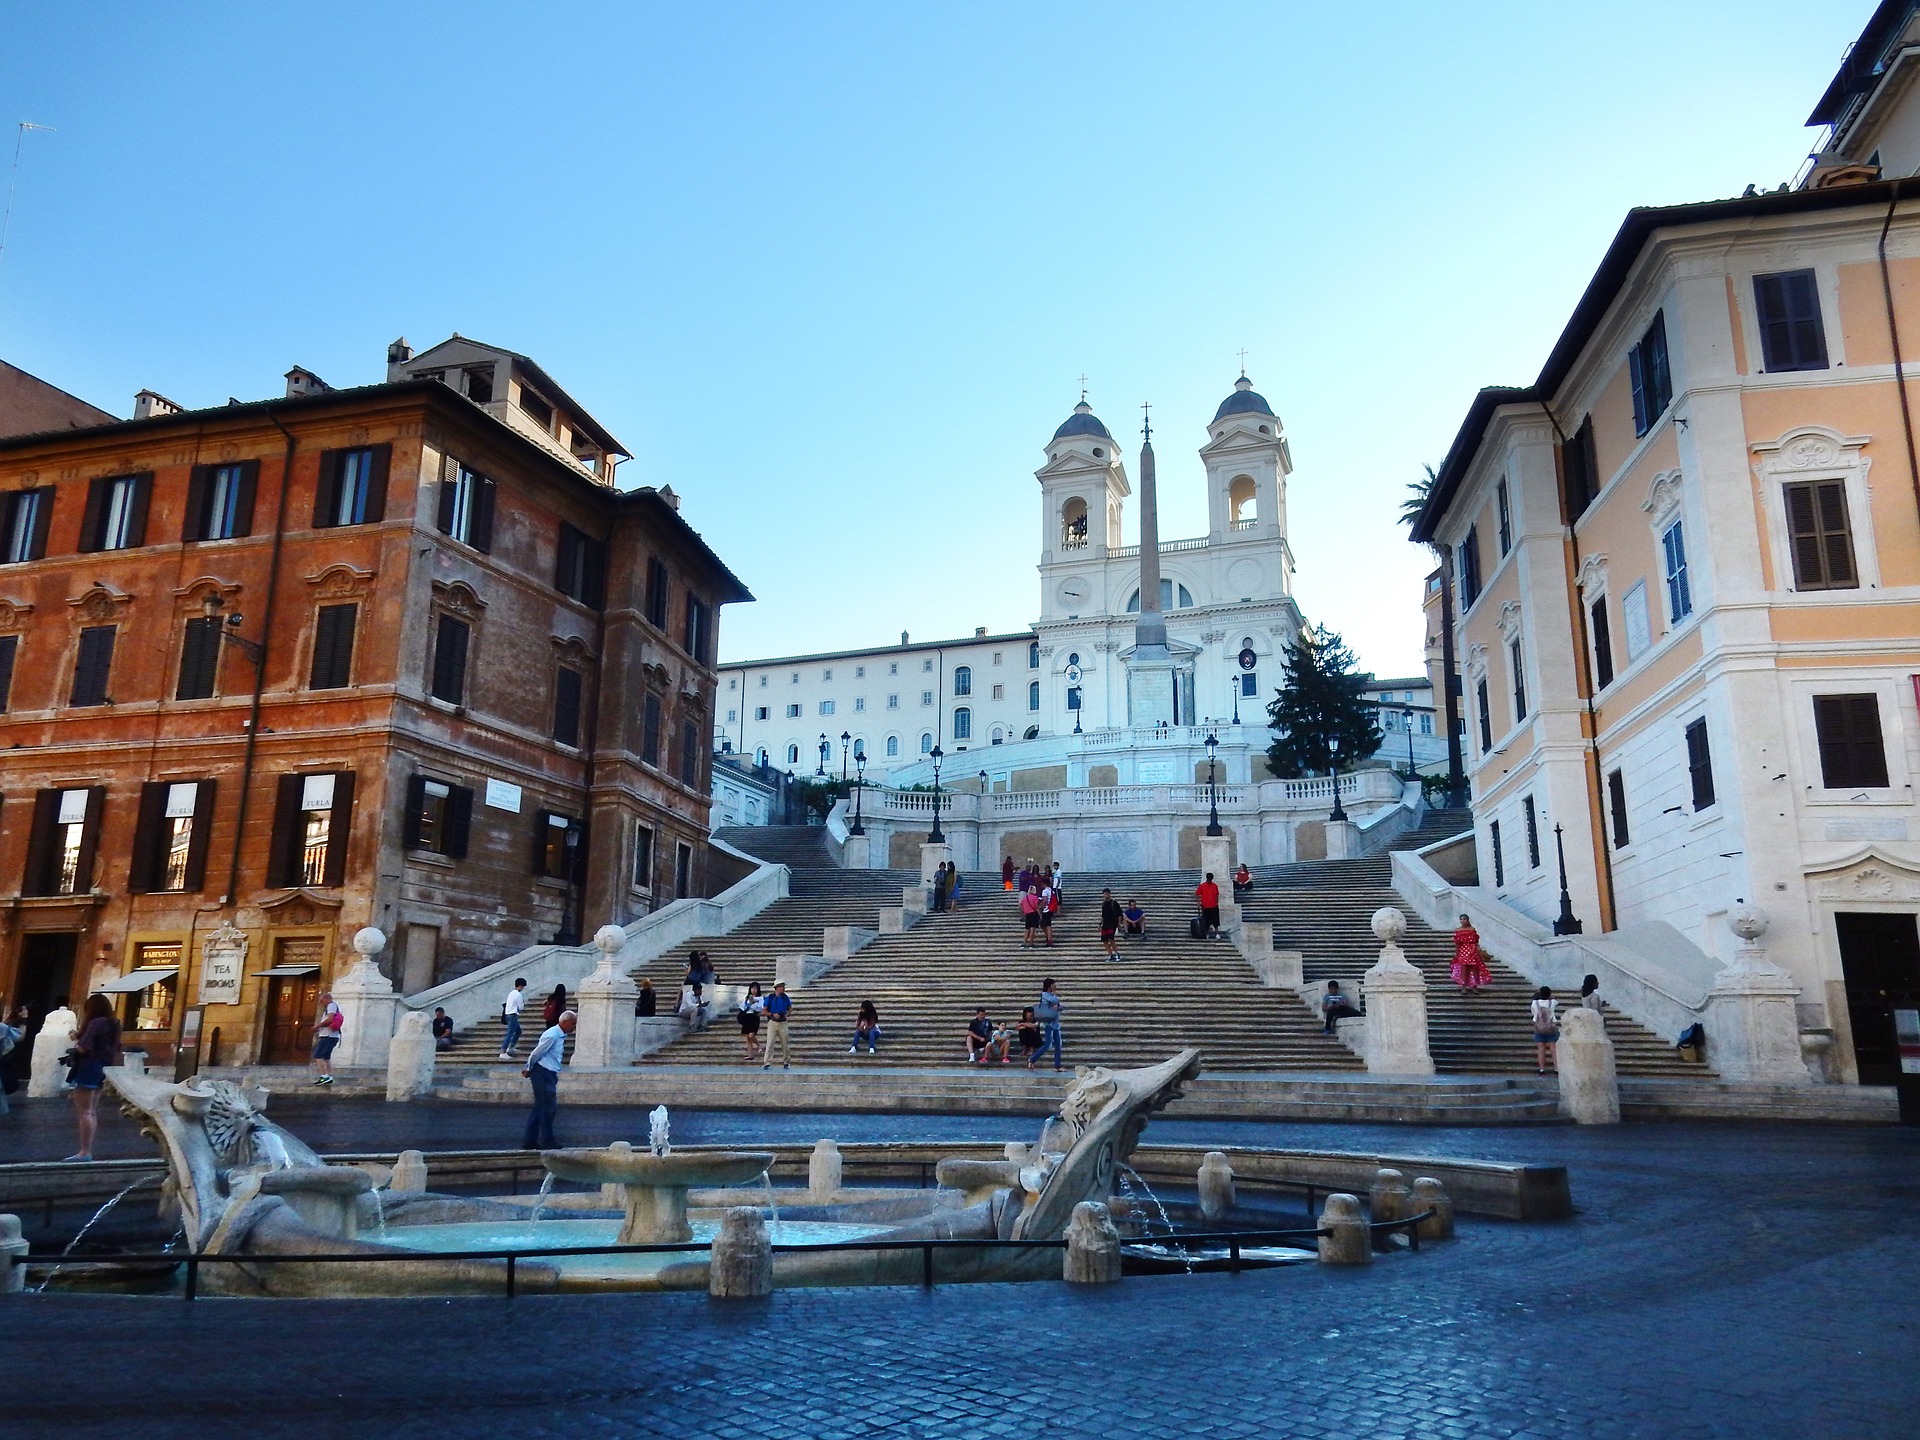 التسوق في روما ليس مجرد تبضع , تعرف على افضل اماكن و شوارع التسوق في اقدم مدينة بالعالم